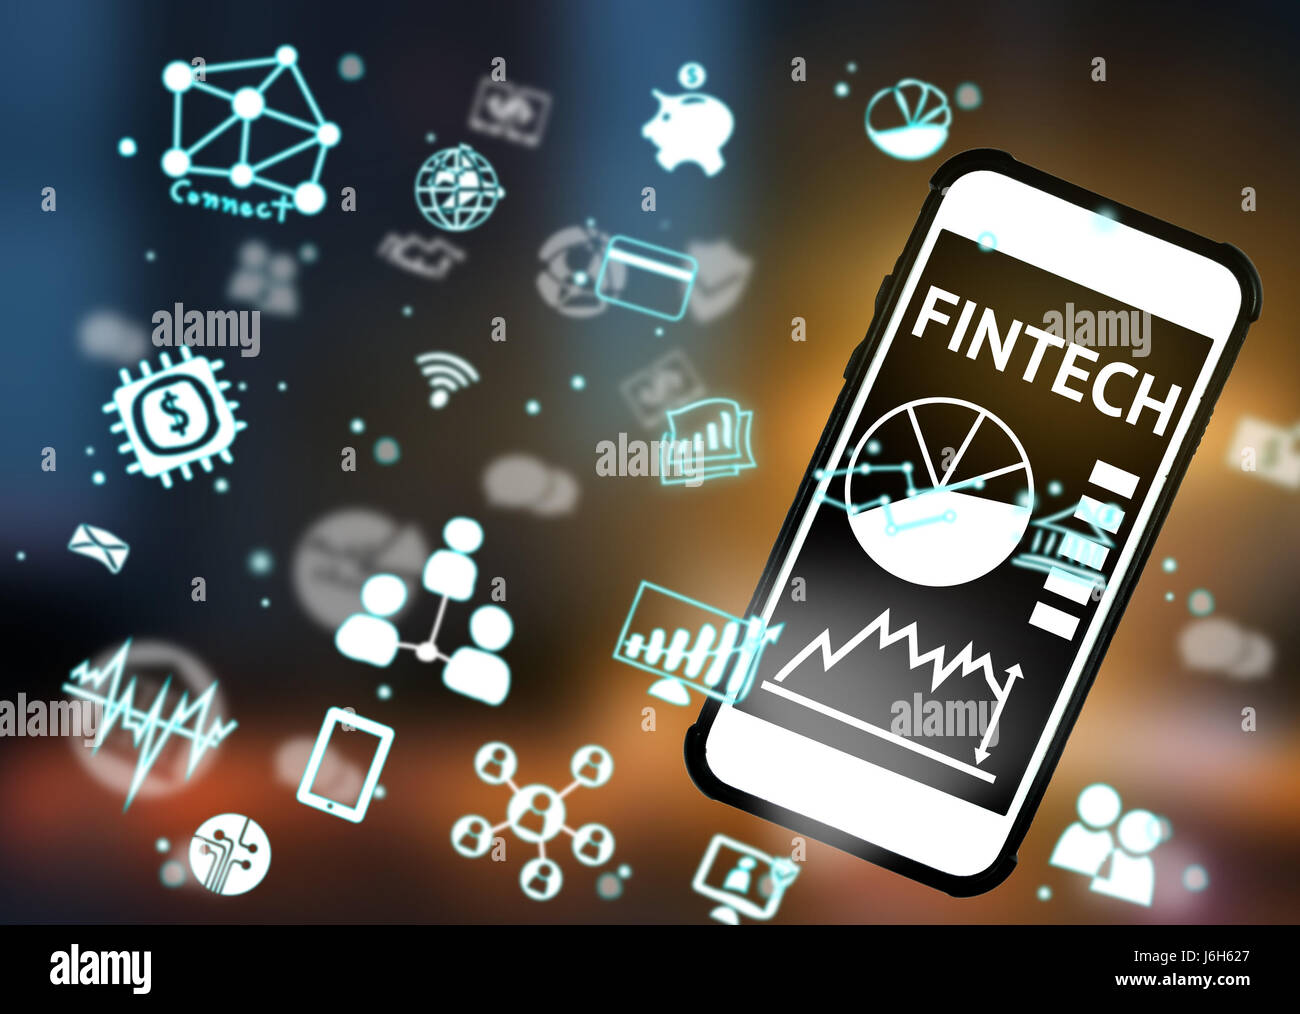 La technologie de l'Internet financier Investissement Fintech. Concept smart phone , Icône , doigt brouillée avec abstract background Banque D'Images